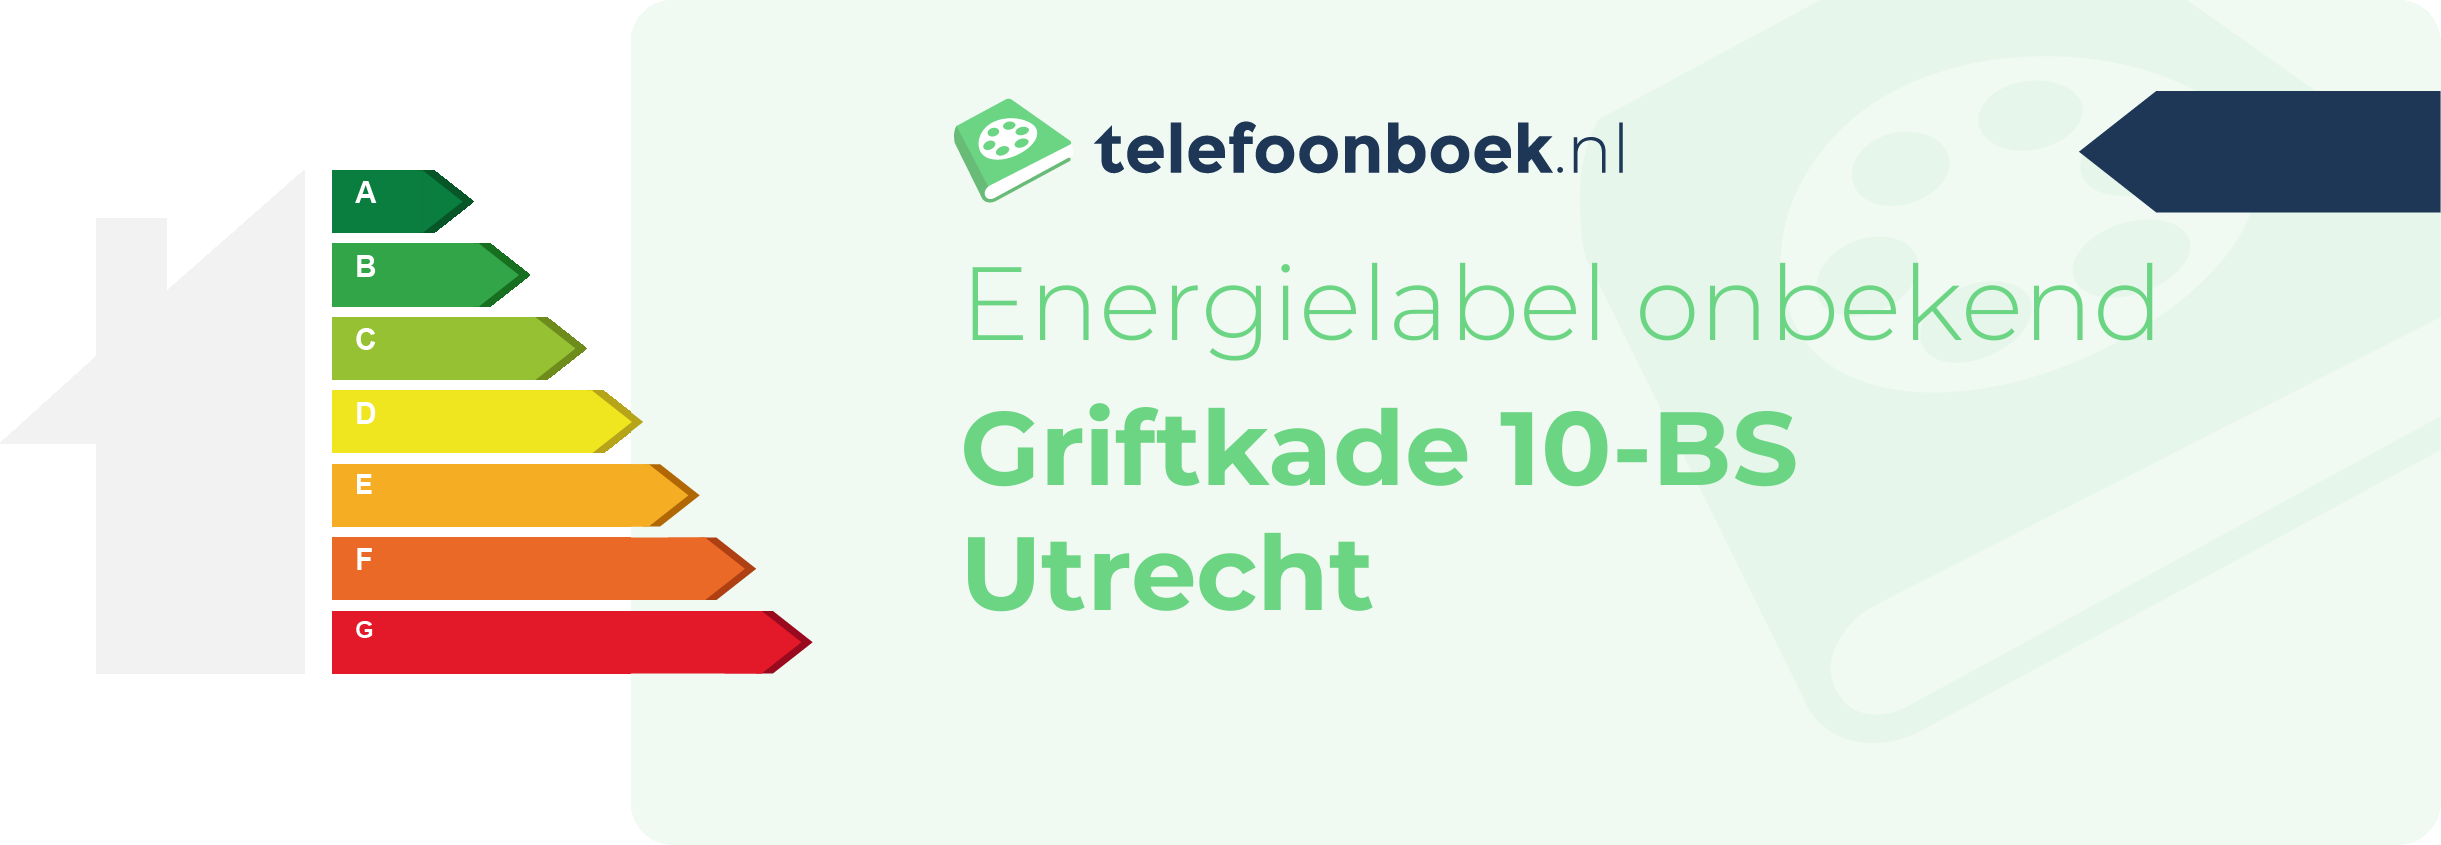 Energielabel Griftkade 10-BS Utrecht